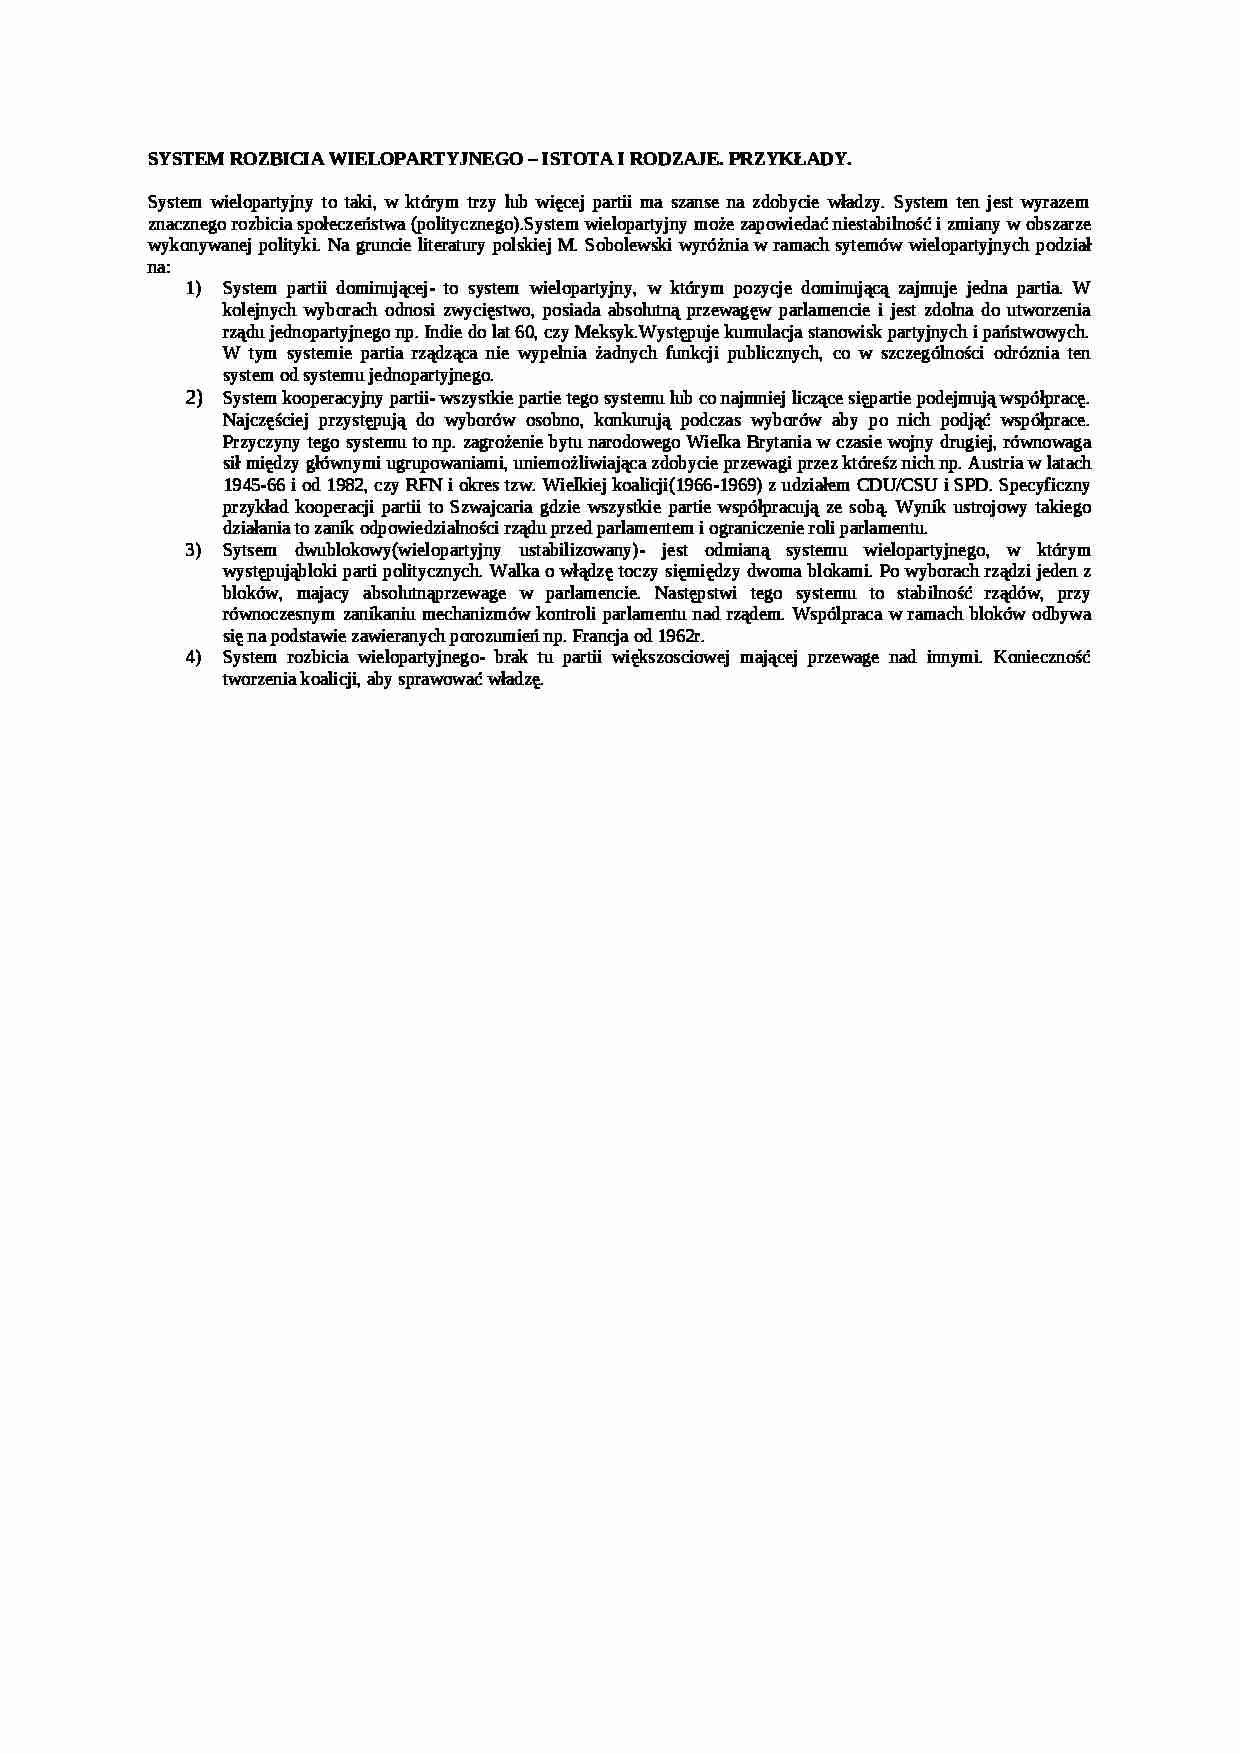 System rozbicia wielopartyjnego-istota i rodzaje - strona 1